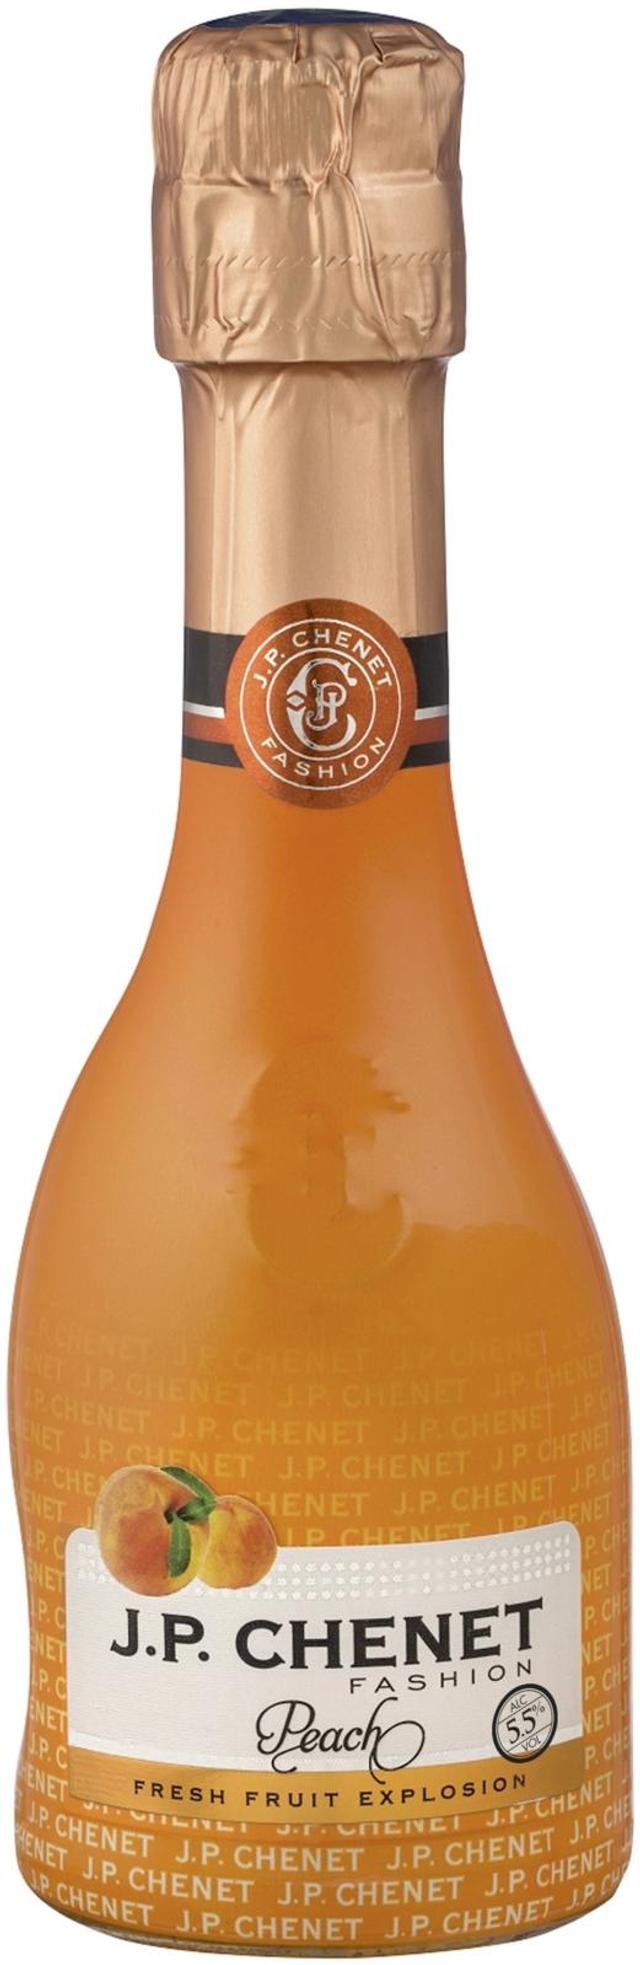 JP. Chenet Fashion Peach 5,5% viinipohjainen juomasekoitus 0,2 L